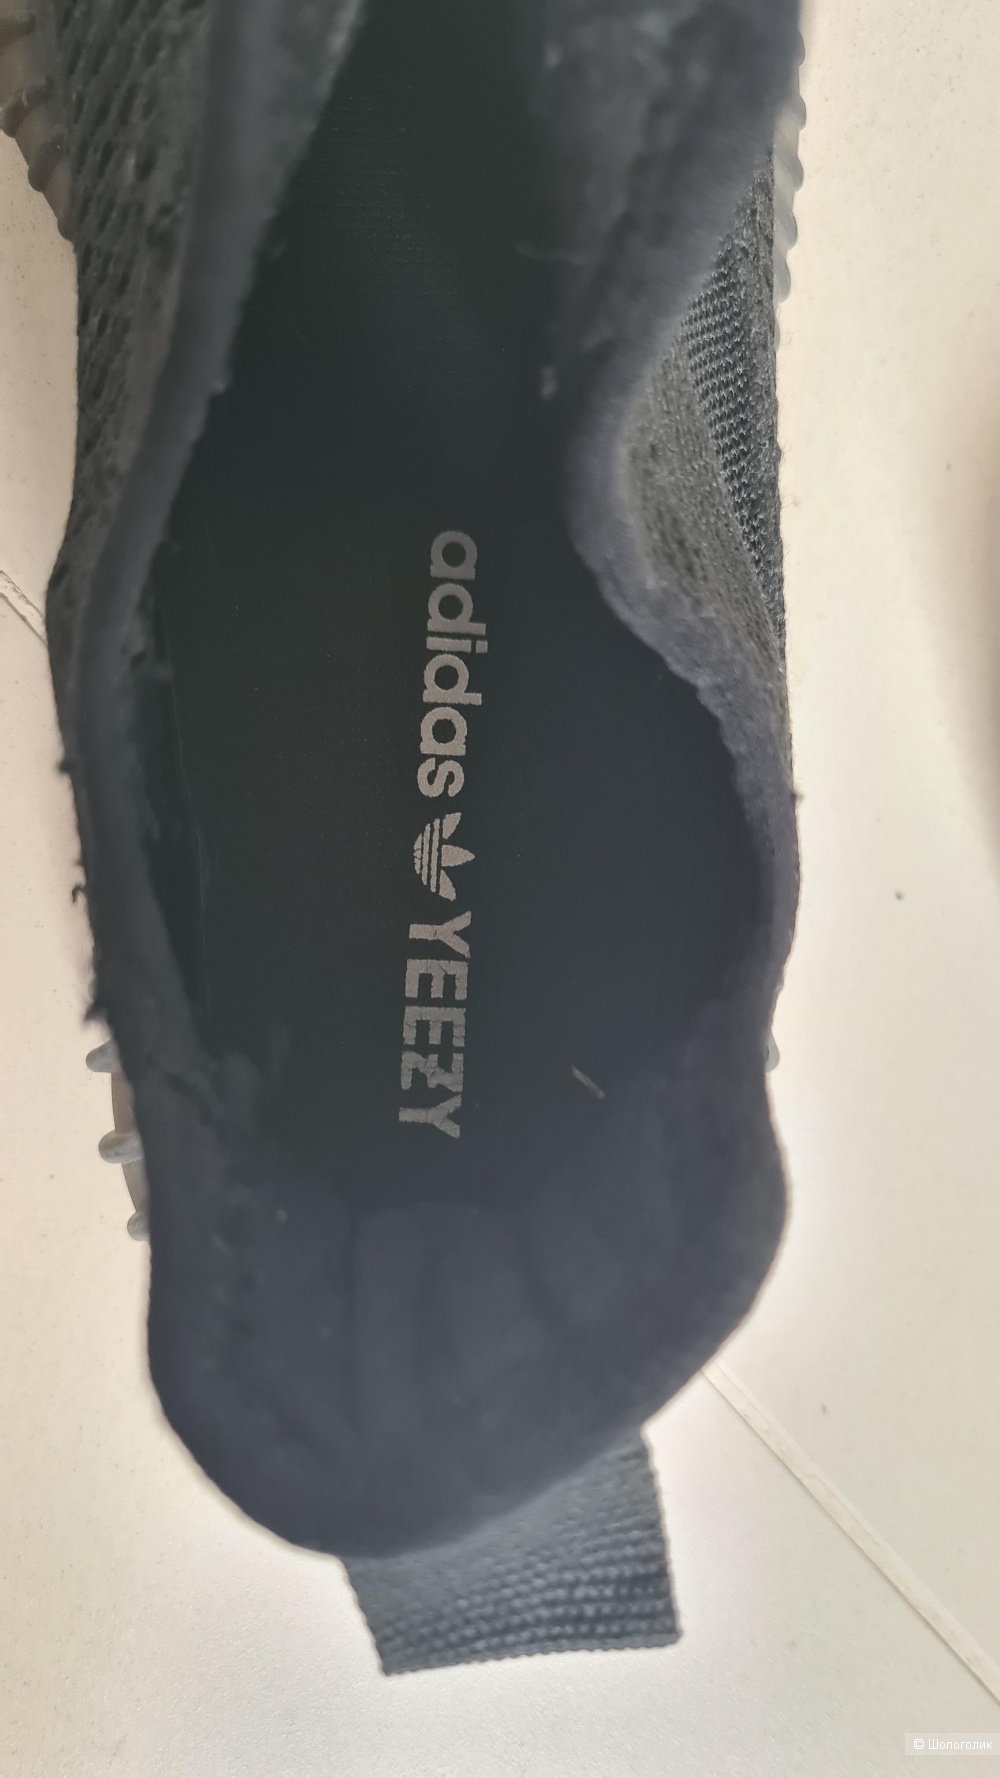 Кроссовки Adidas Yeezy (копия) р.39 (25-25,5 см)